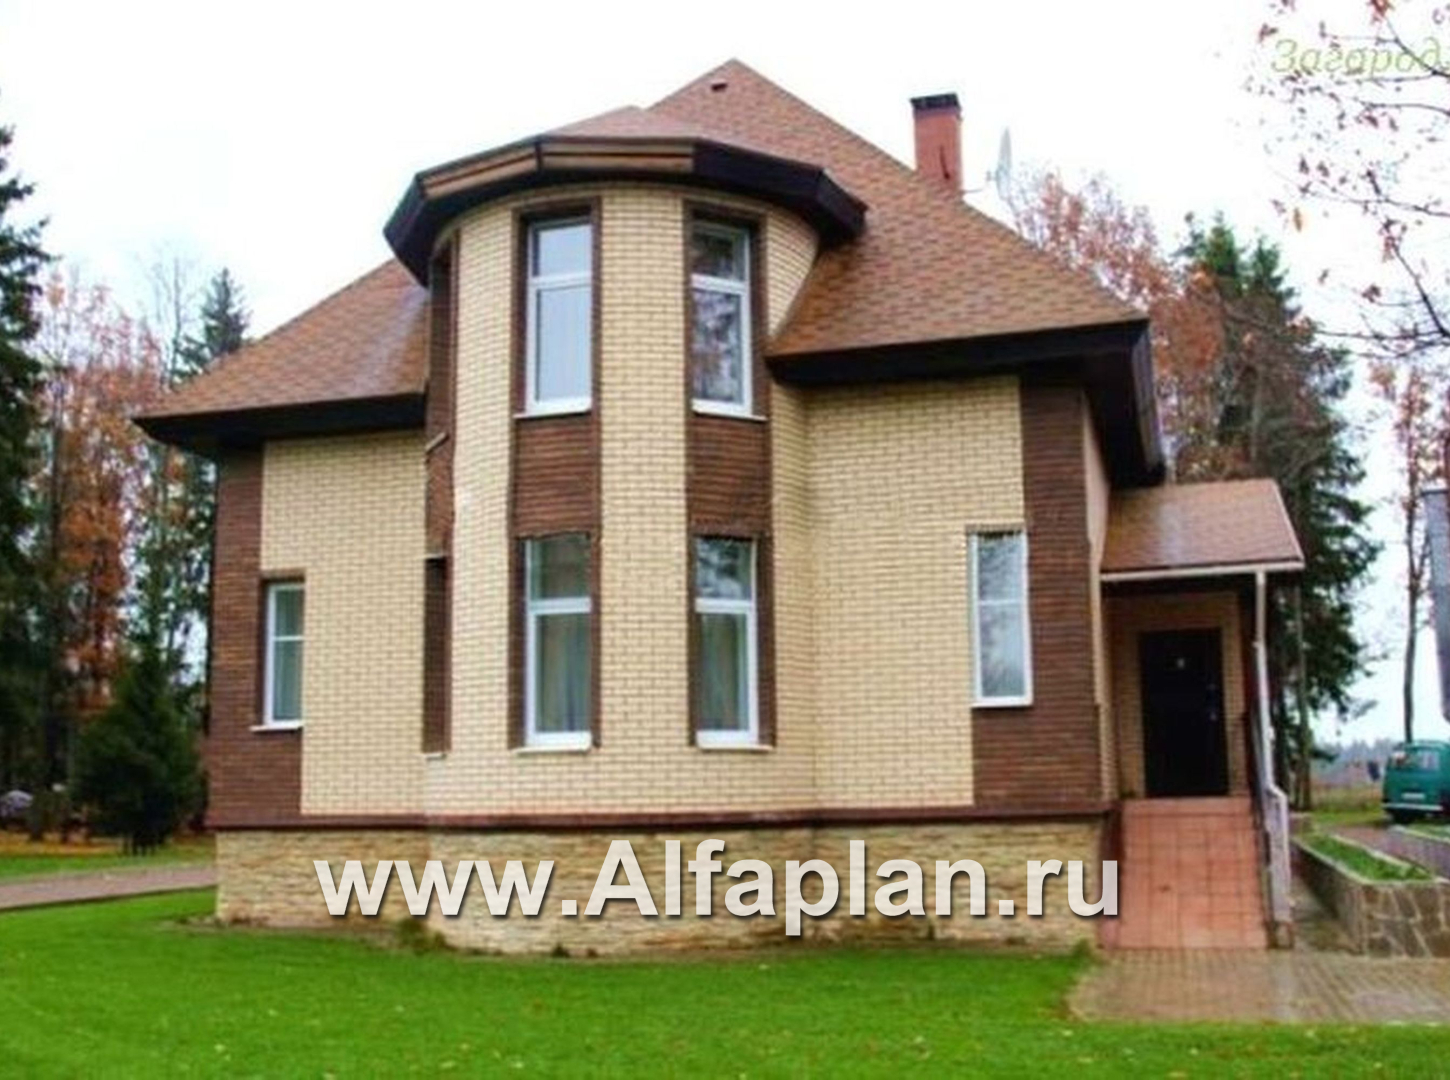 Проекты домов Альфаплан - «Петит» - проект дома с полукруглым эркером - дополнительное изображение №1